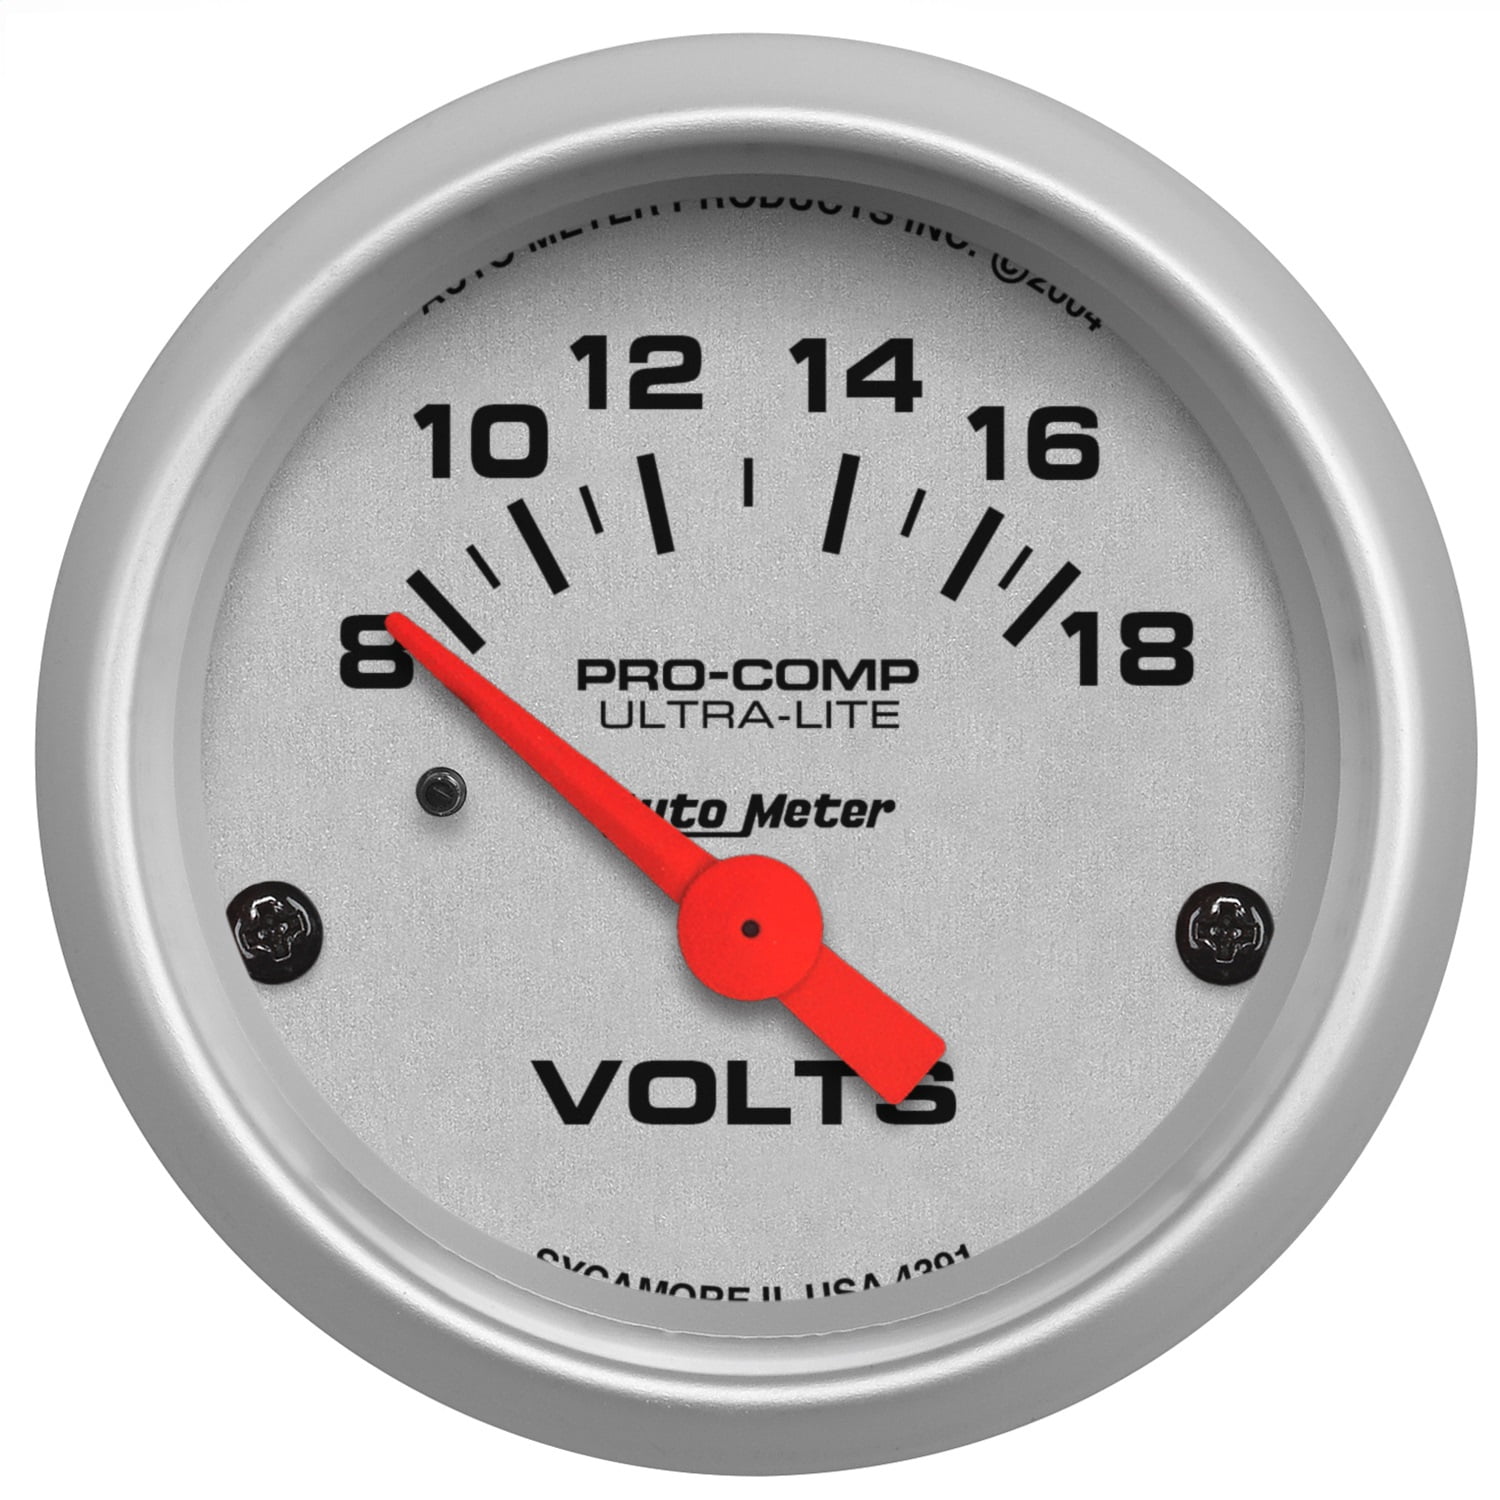 Dorman 84621 12V DC Digital Voltmeter 